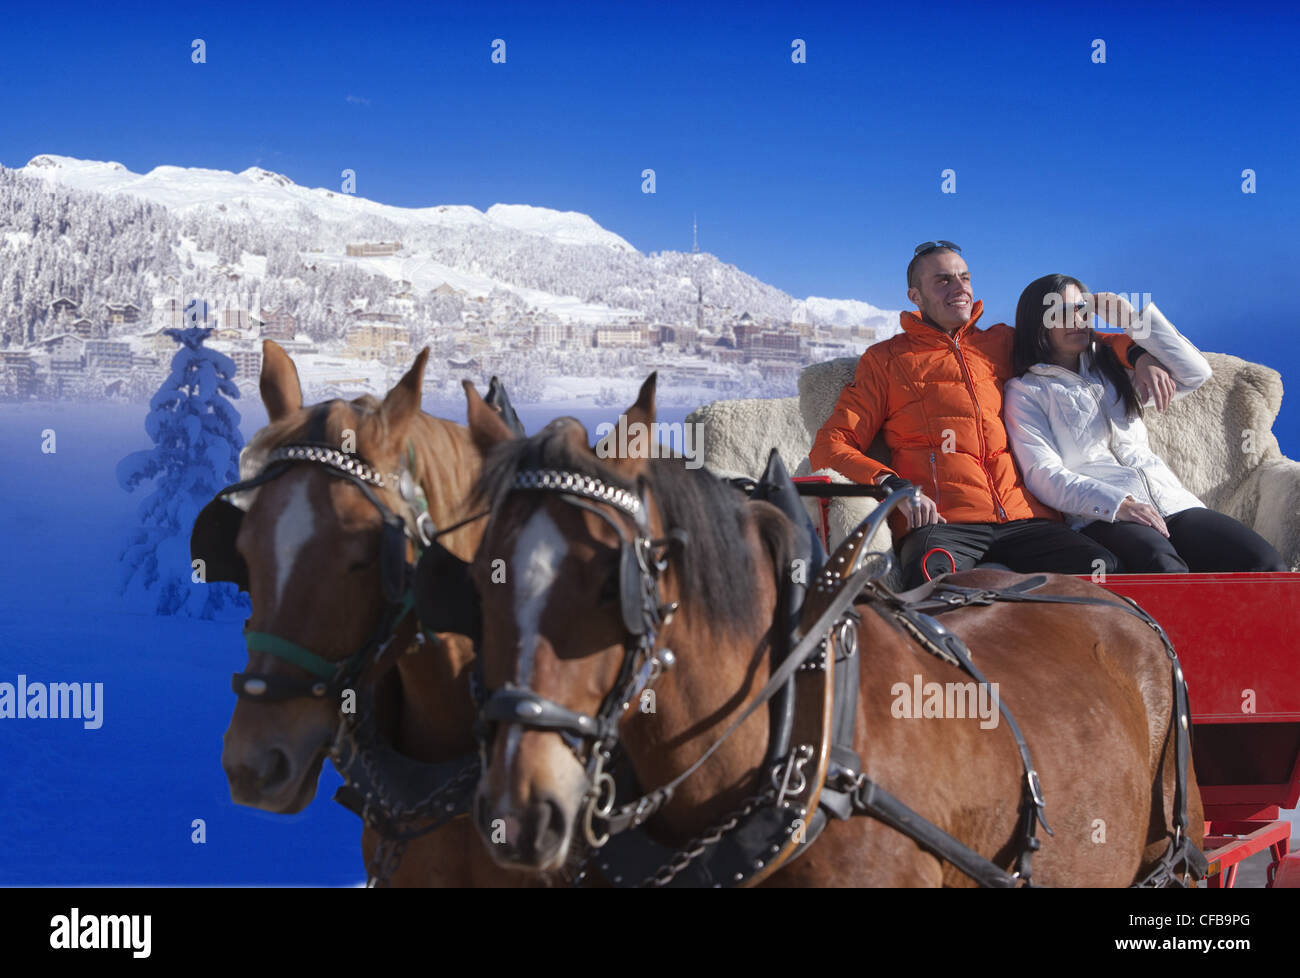 Lago di montagna, cavallo, turismo, vacanze, del cantone dei Grigioni, Grigioni, Svizzera, Europa, giovane, cavalli, slitta, viaggio, tour Foto Stock